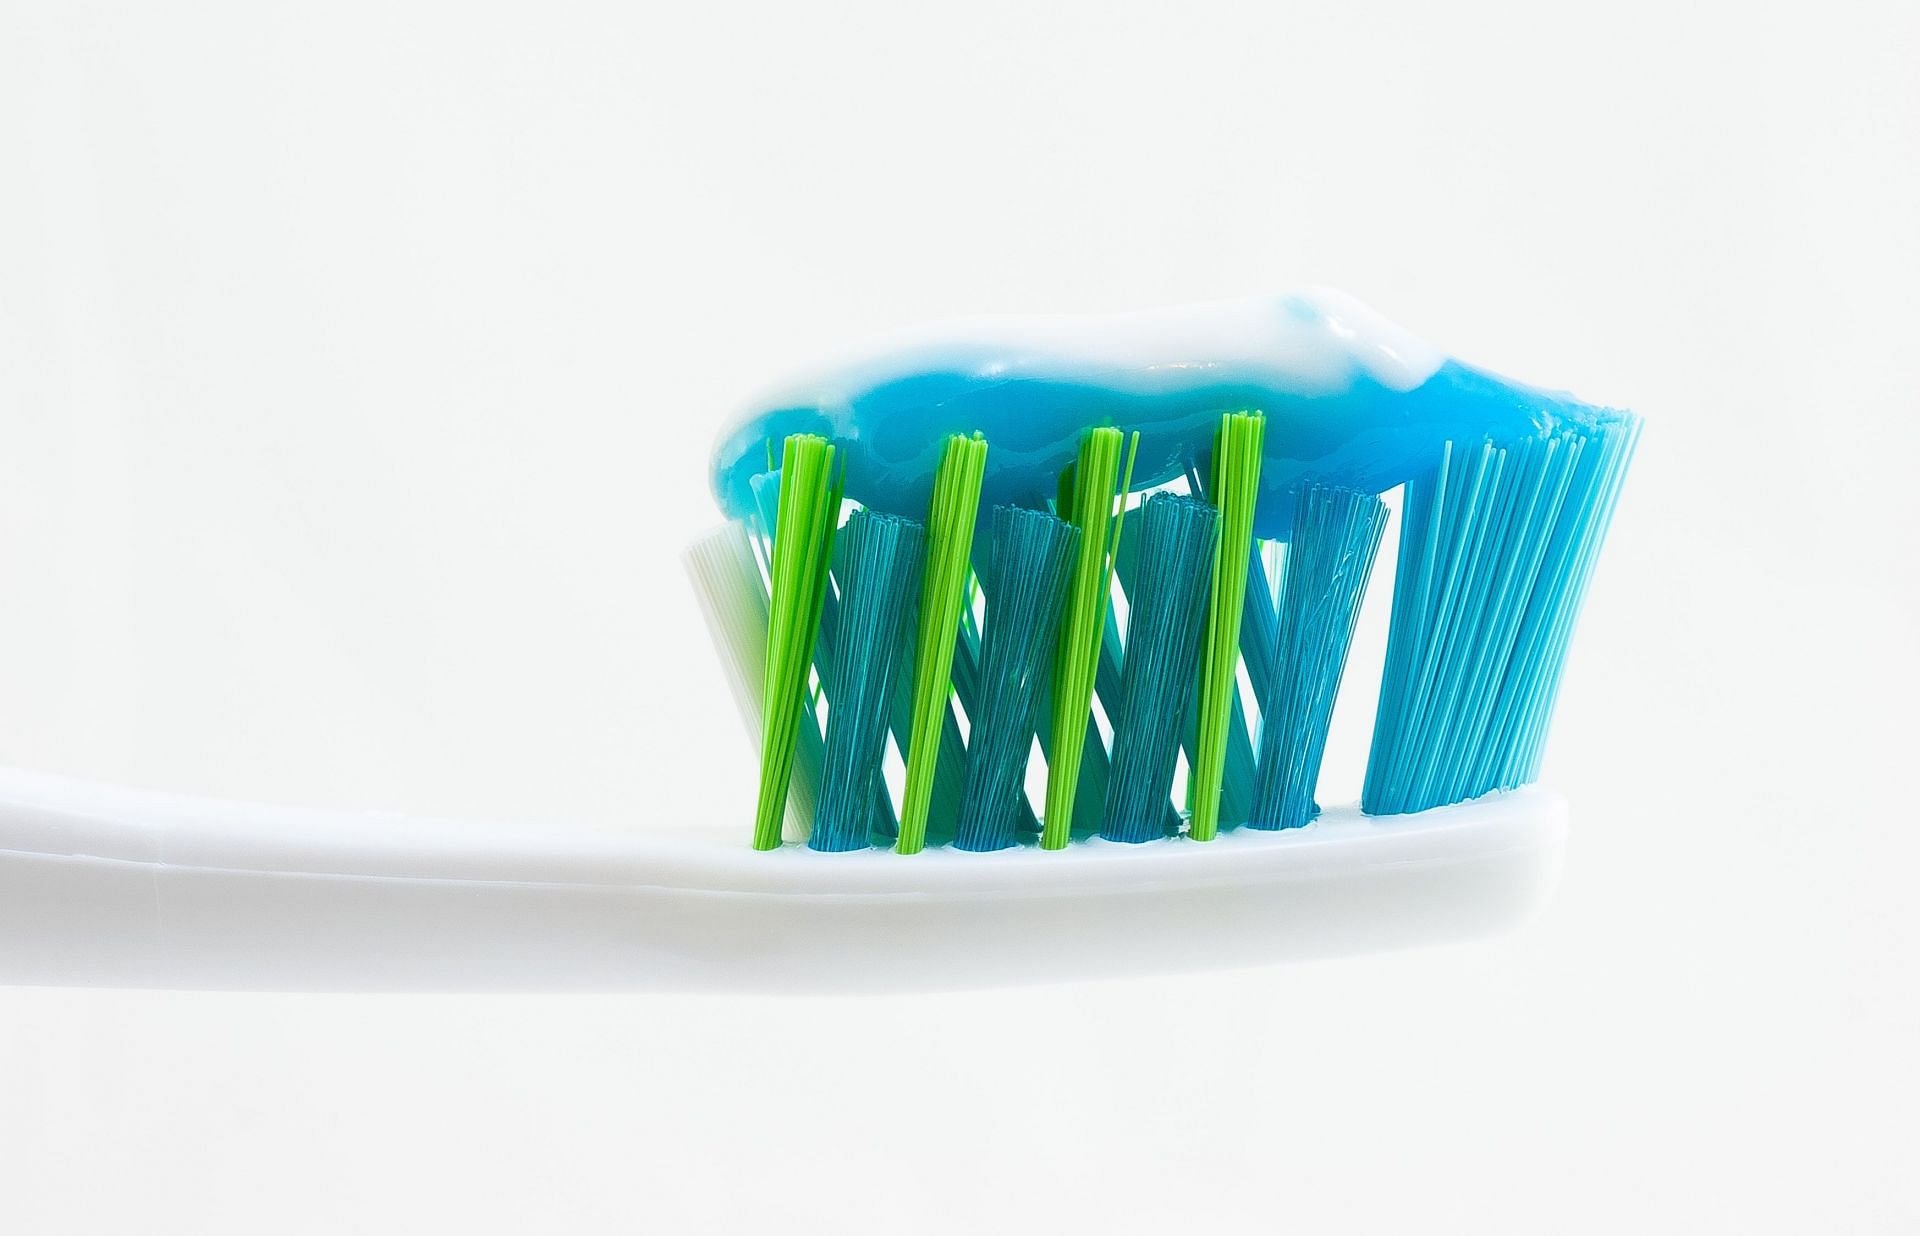 Toothpaste (Image via Unsplash/William)